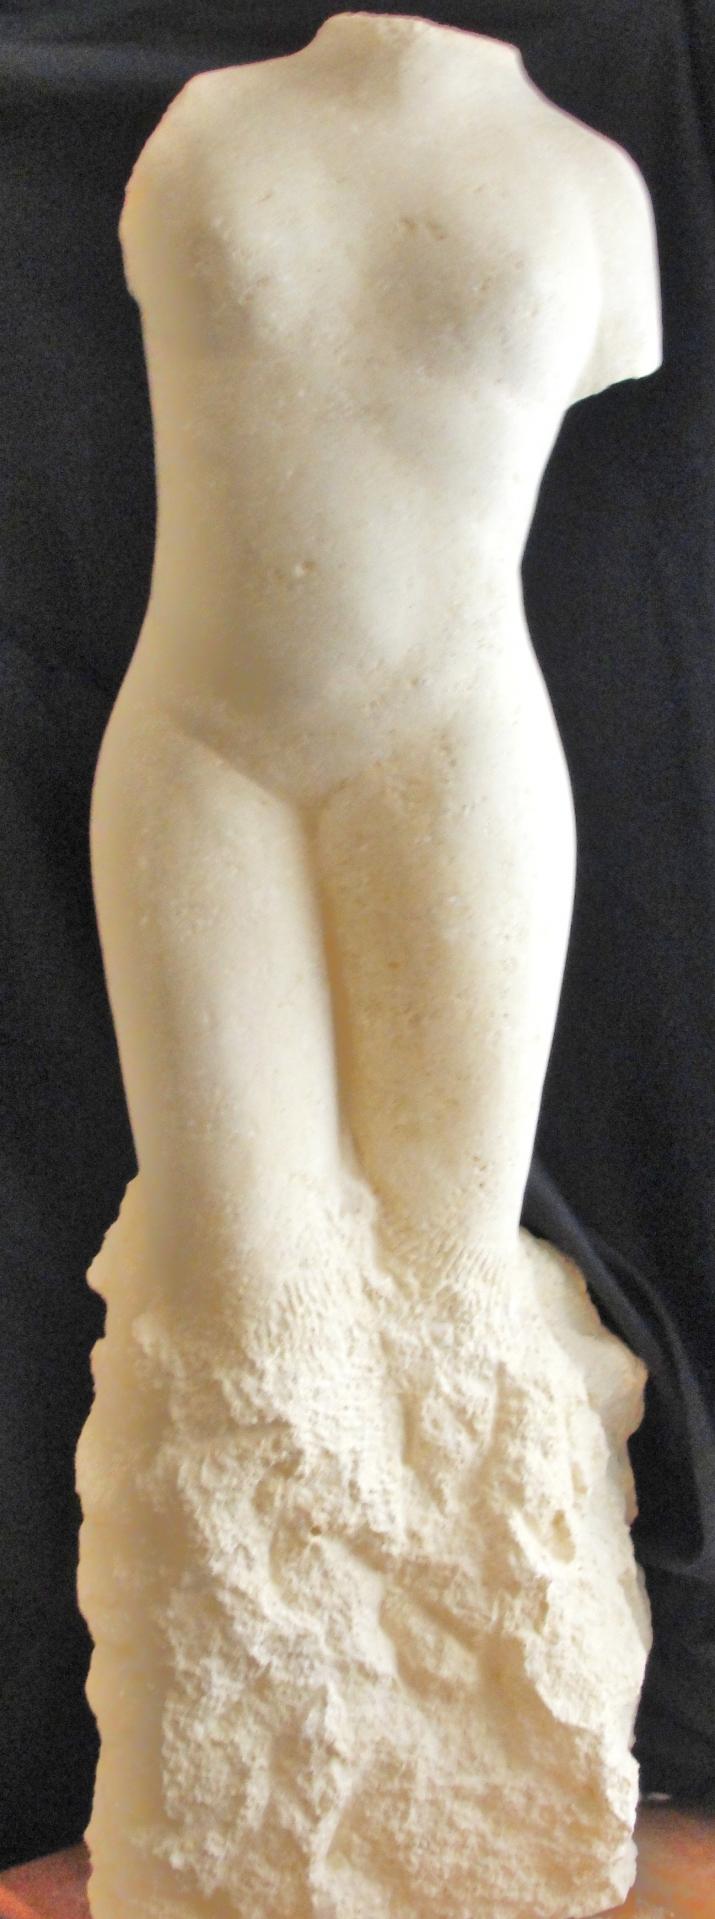 Venus sculpture en pierre statue de jean joseph chevalier 1